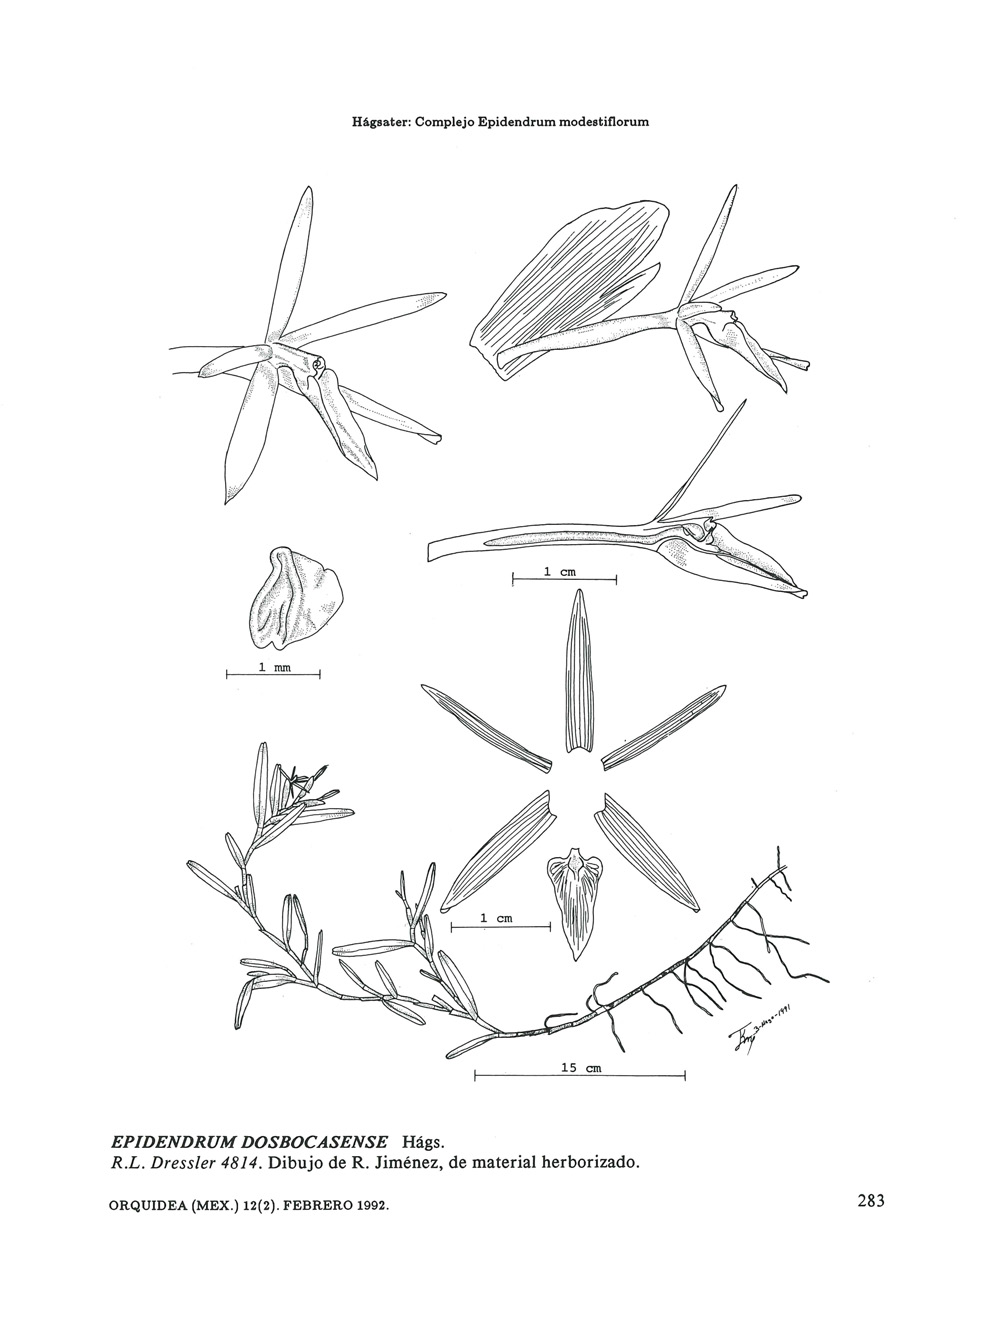 Hágsater: Complejo Epidendrum modestiflorum 1mrn 15 cm EPIDENDRUM DOSBOCASENSE Hágs. R.L.